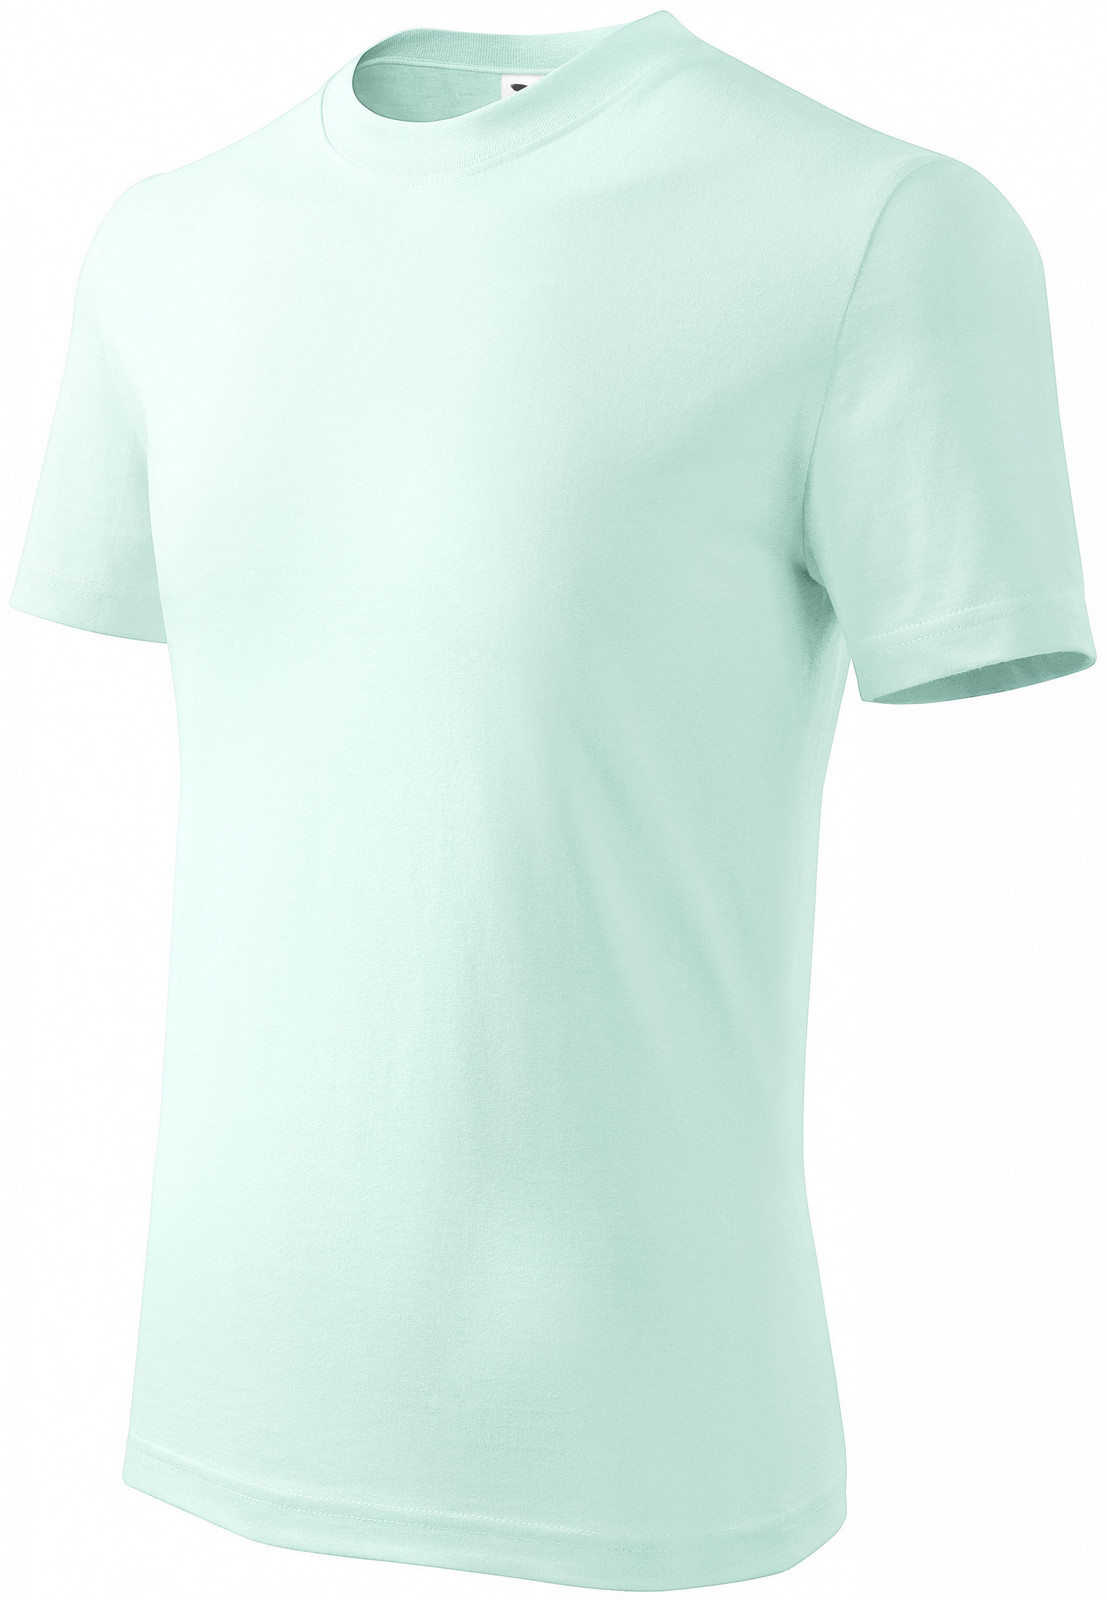 Dětské tričko jednoduché, ledová zelená, 110cm / 4roky